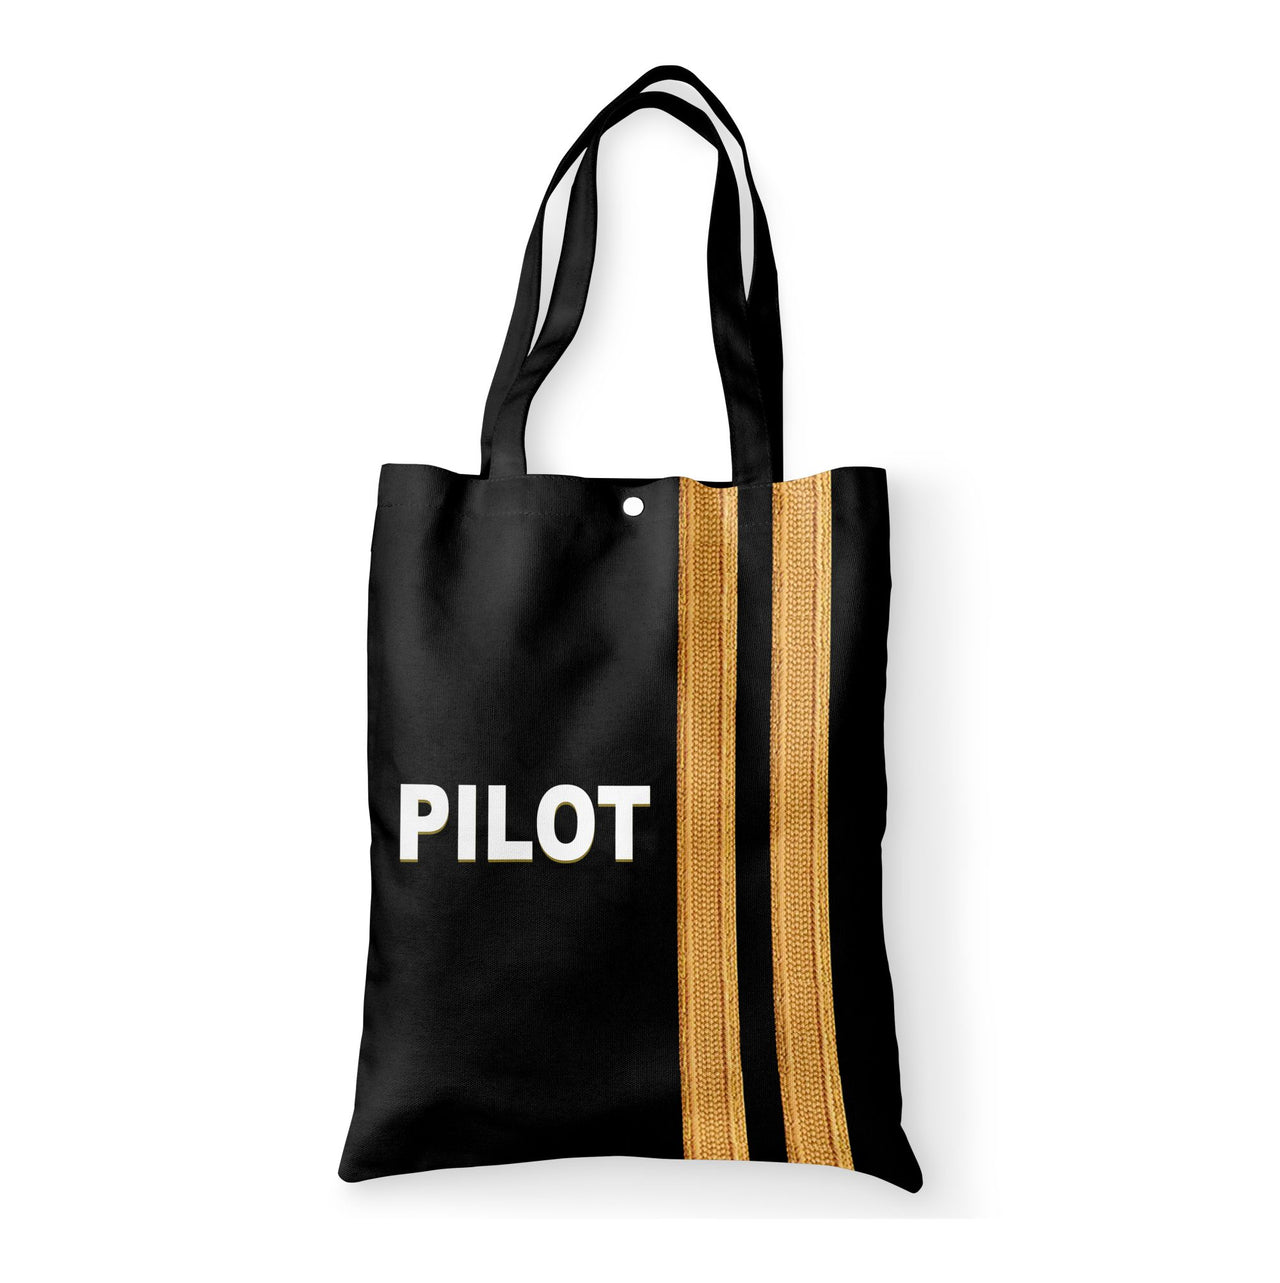 PILOT & Epaulettes 2 Lines Designed Tote Bags